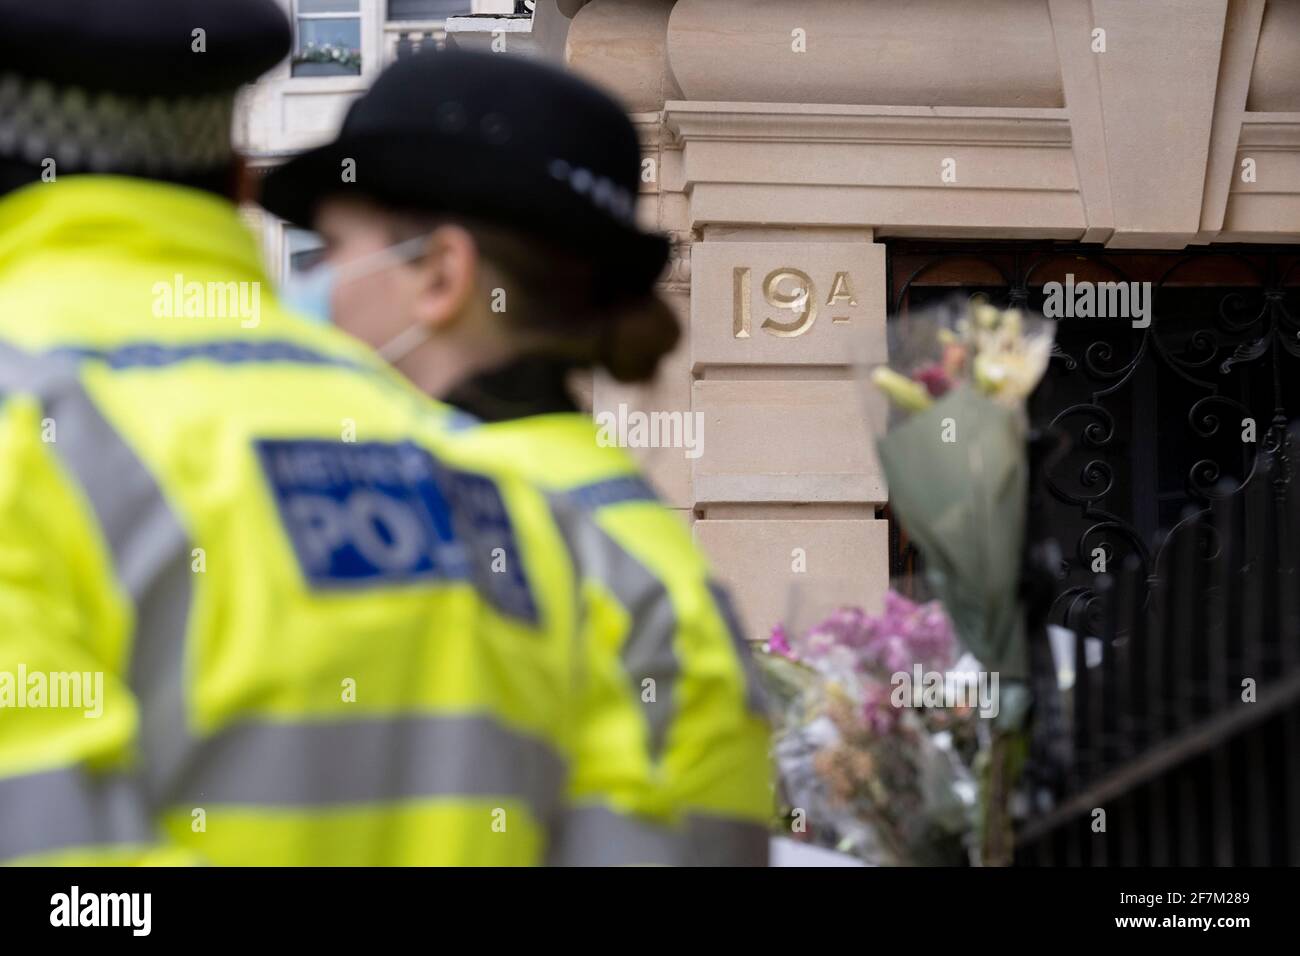 Ufficiali di polizia britannici sorvegliano l'ambasciata del Myanmar a Londra, dopo che il suo ambasciatore a Londra, Kyaw Zwar Minn, ha passato la notte nella sua automobile dopo che l'addetto militare del suo paese gli ha negato l'ingresso nei locali, l'8 aprile 2021, a Londra, Inghilterra. Il governo democraticamente eletto in Myanmar è stato rovesciato a febbraio da un colpo di stato guidato dai militari. Foto Stock